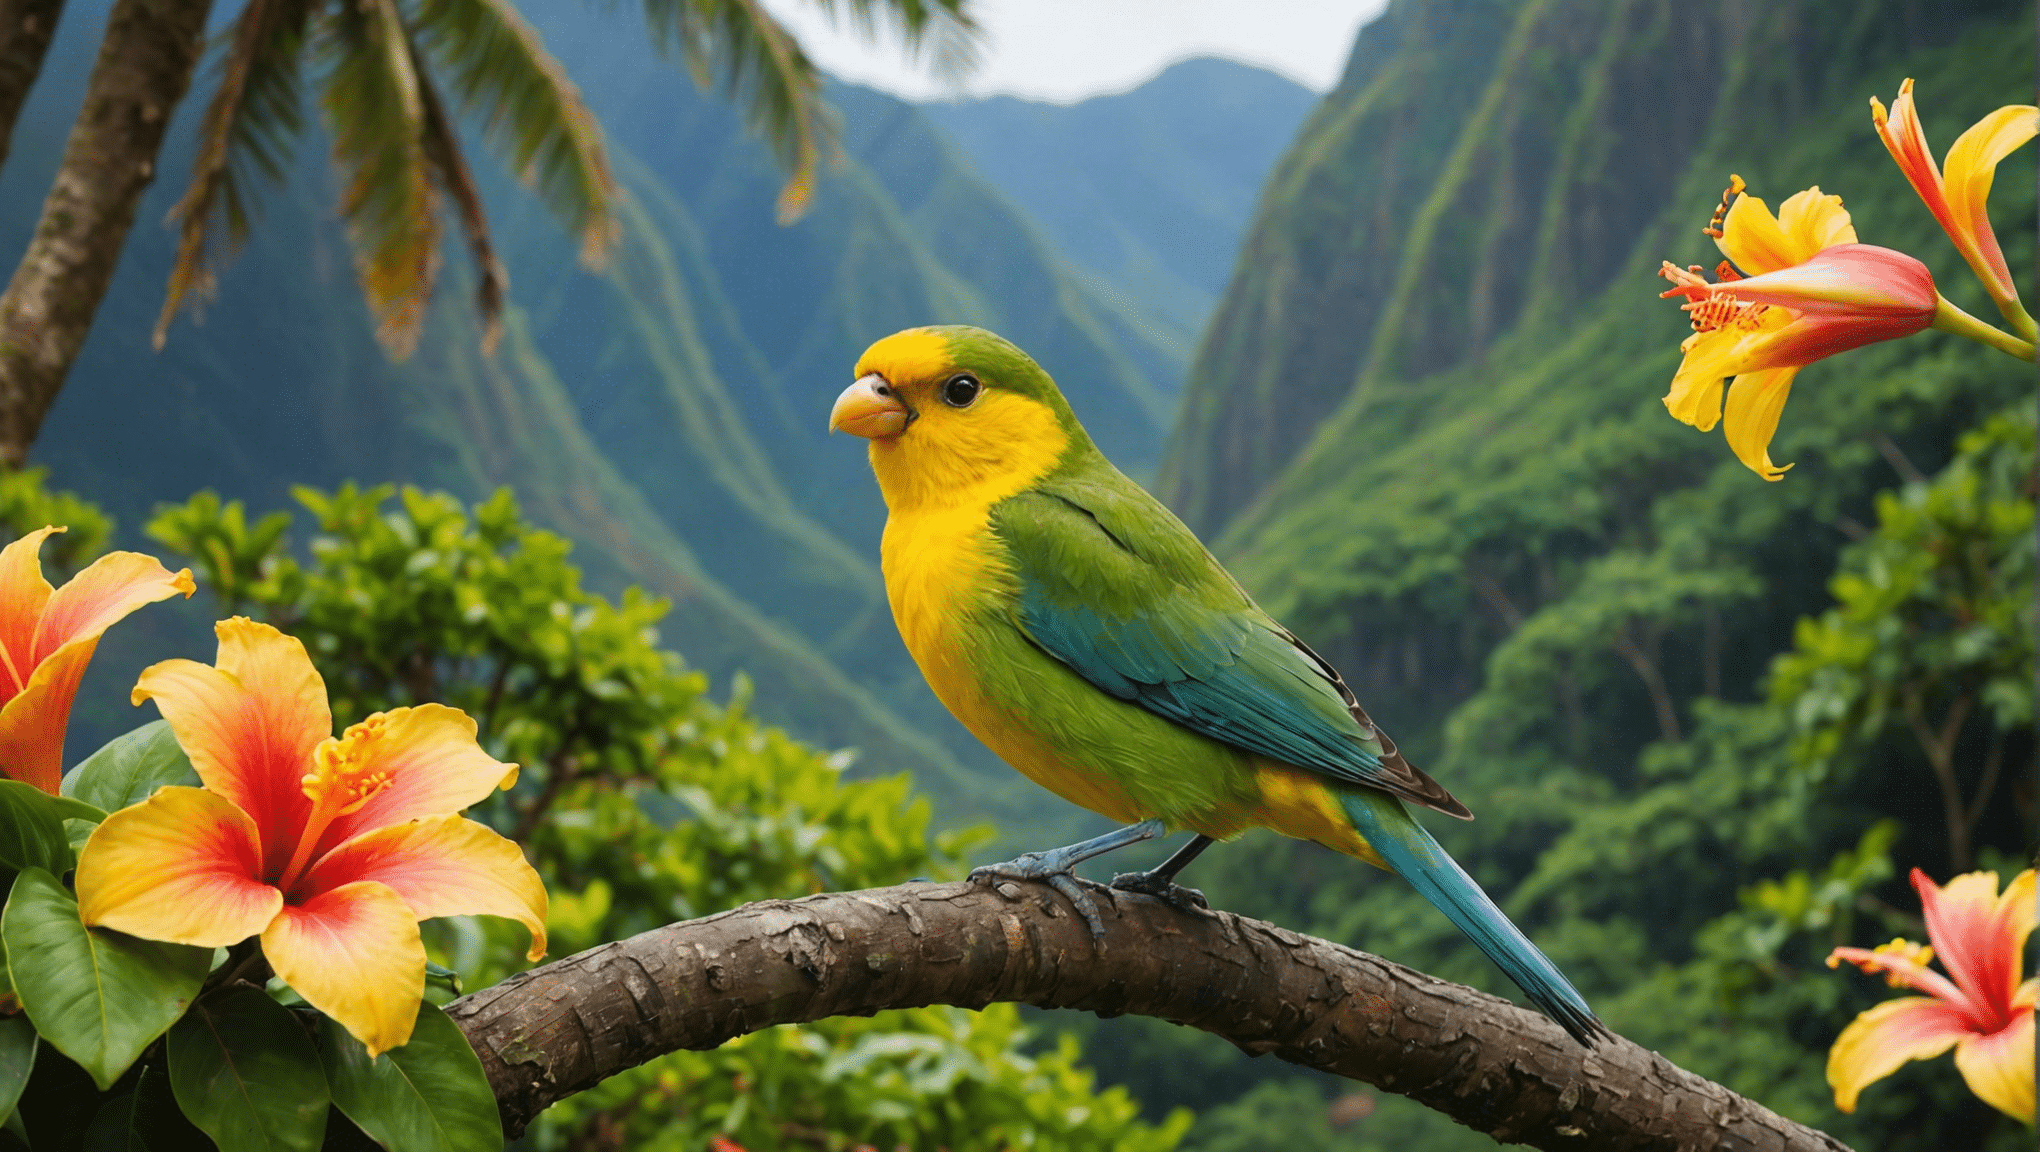 Descubra las especies de aves distintivas de Hawái y sus fascinantes características. Explore la fauna aviar única de esta isla paradisíaca.